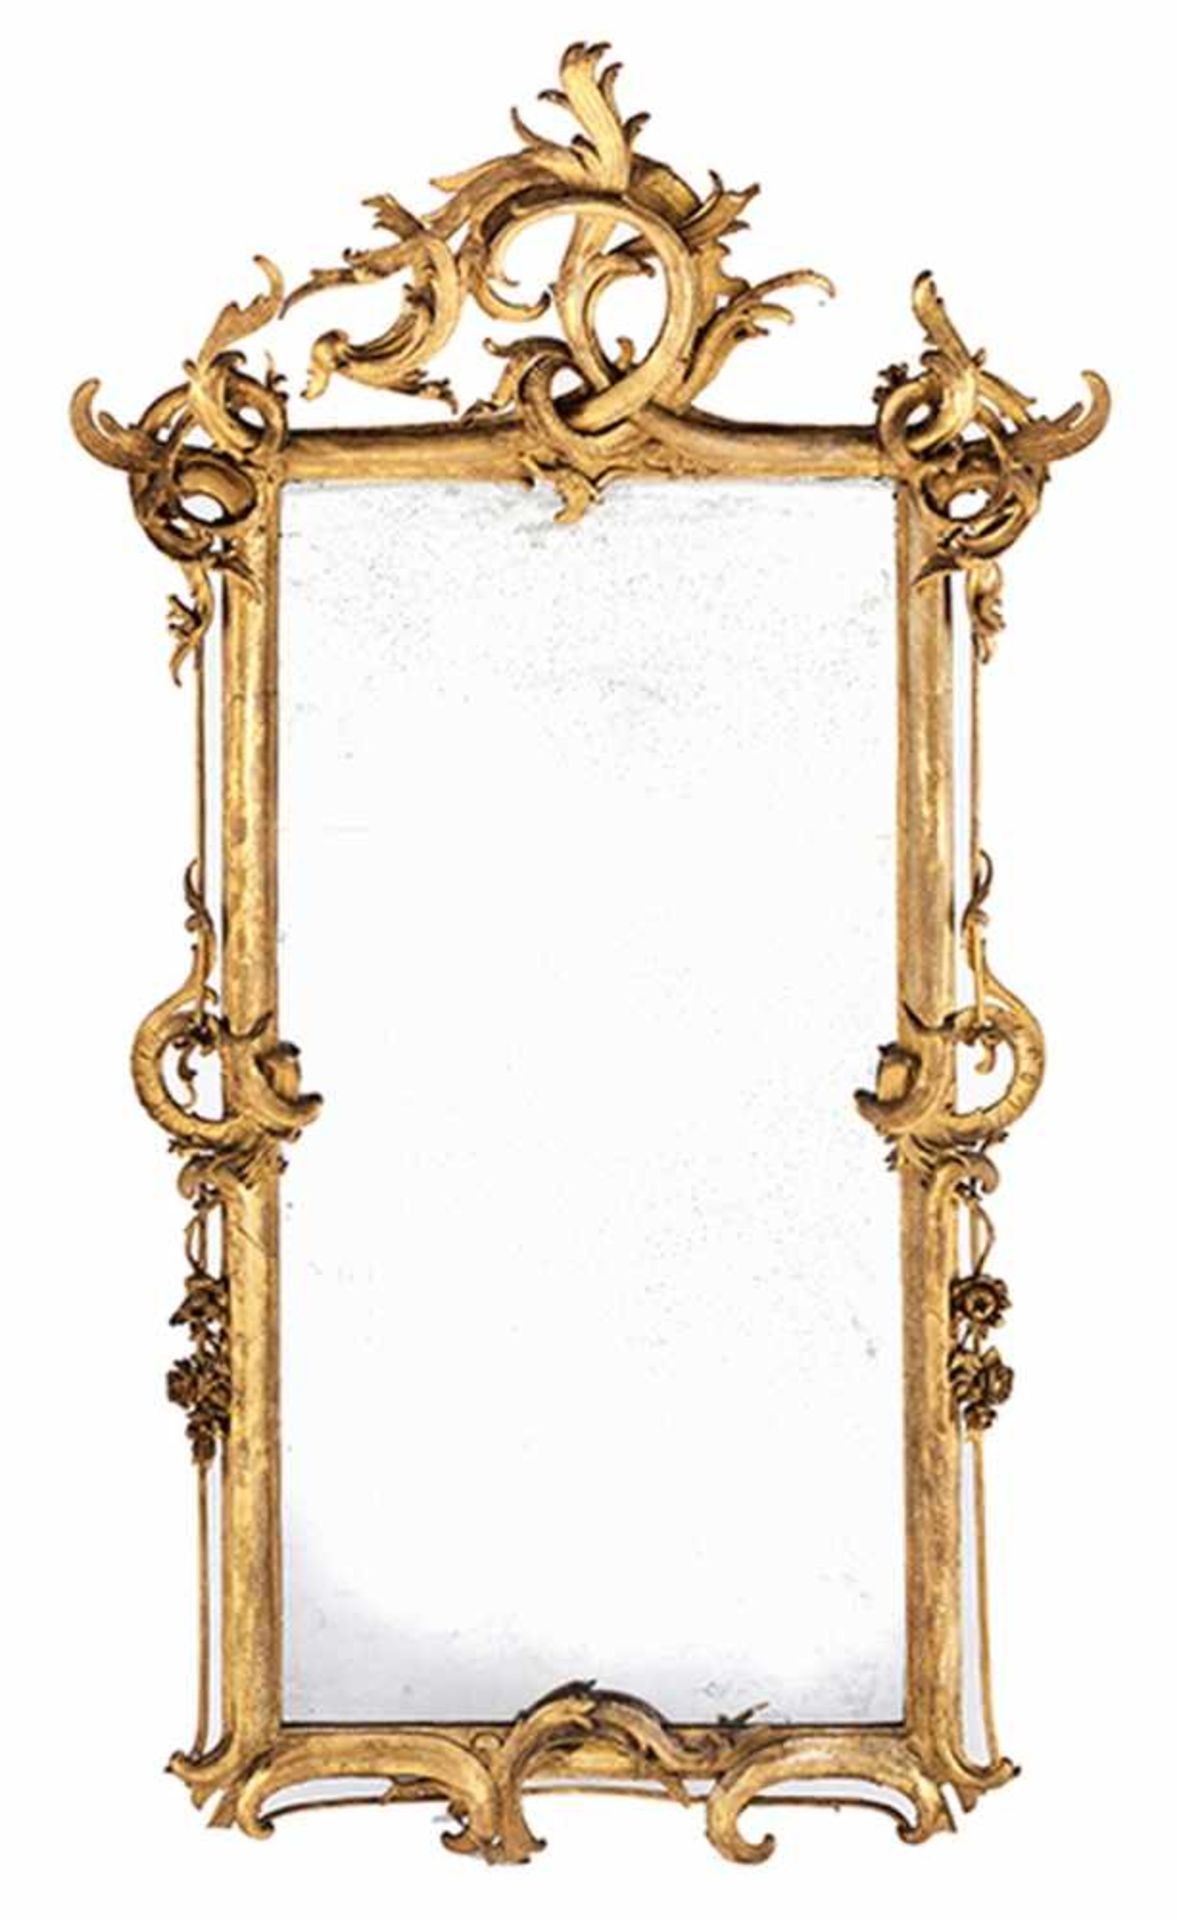 Großer Barock-Spiegel Höhe: 214 cm. Breite: 112,5 cm. Weichholz, geschnitzt, vergoldet. - Bild 2 aus 3